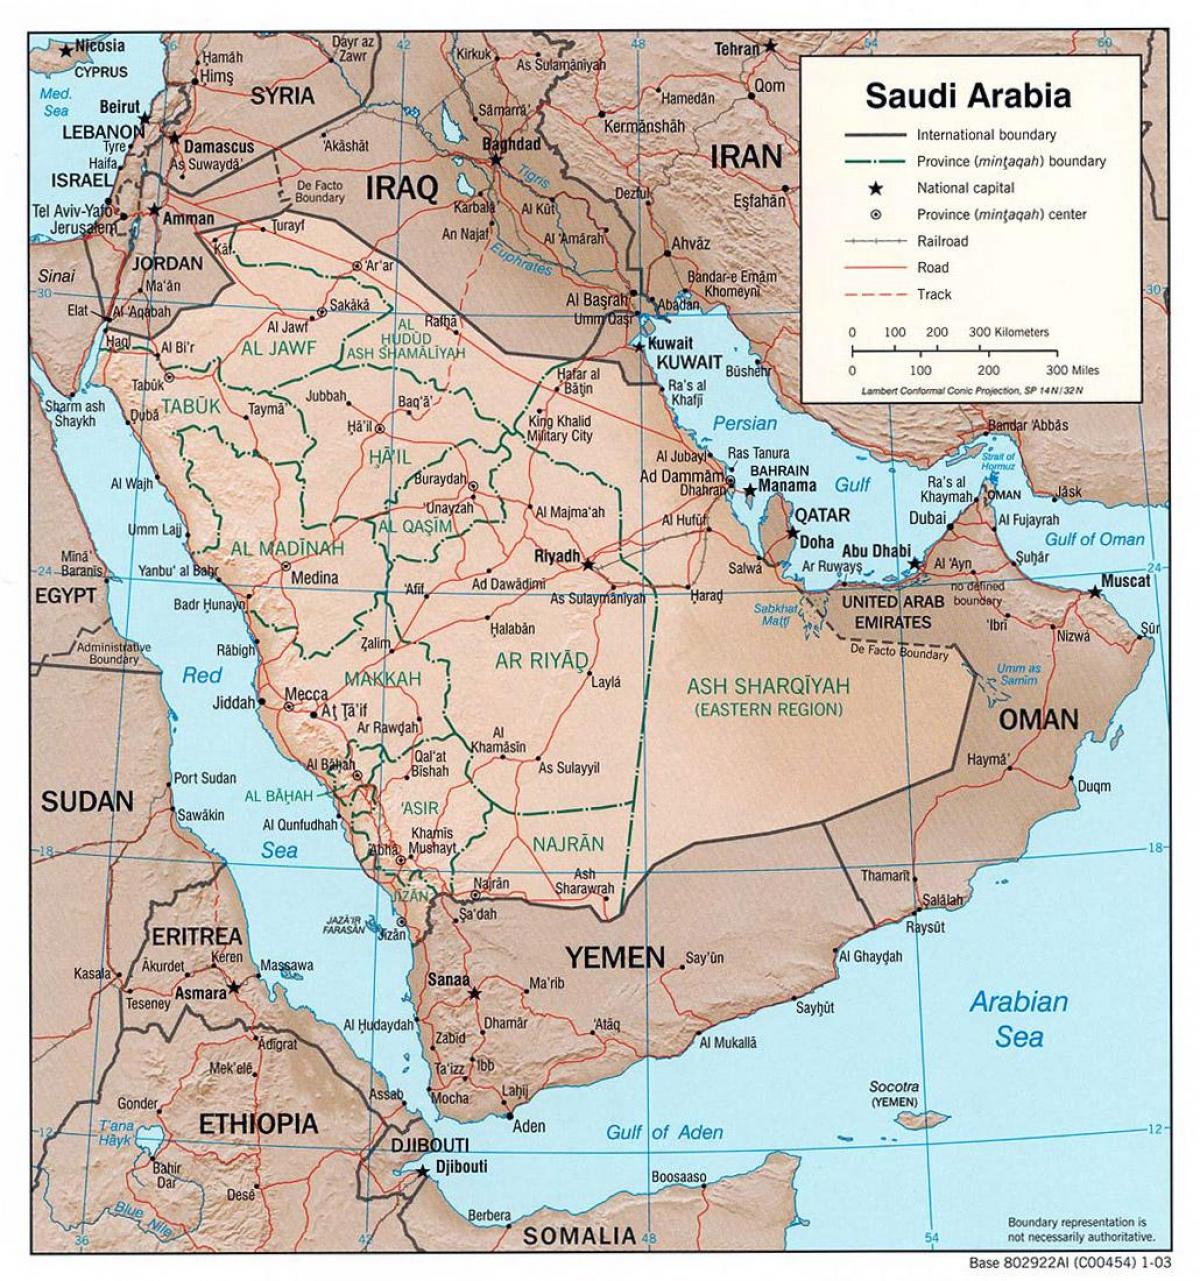 Χάρτης της Σαουδικής Αραβίας με πόλεις από το δρόμο